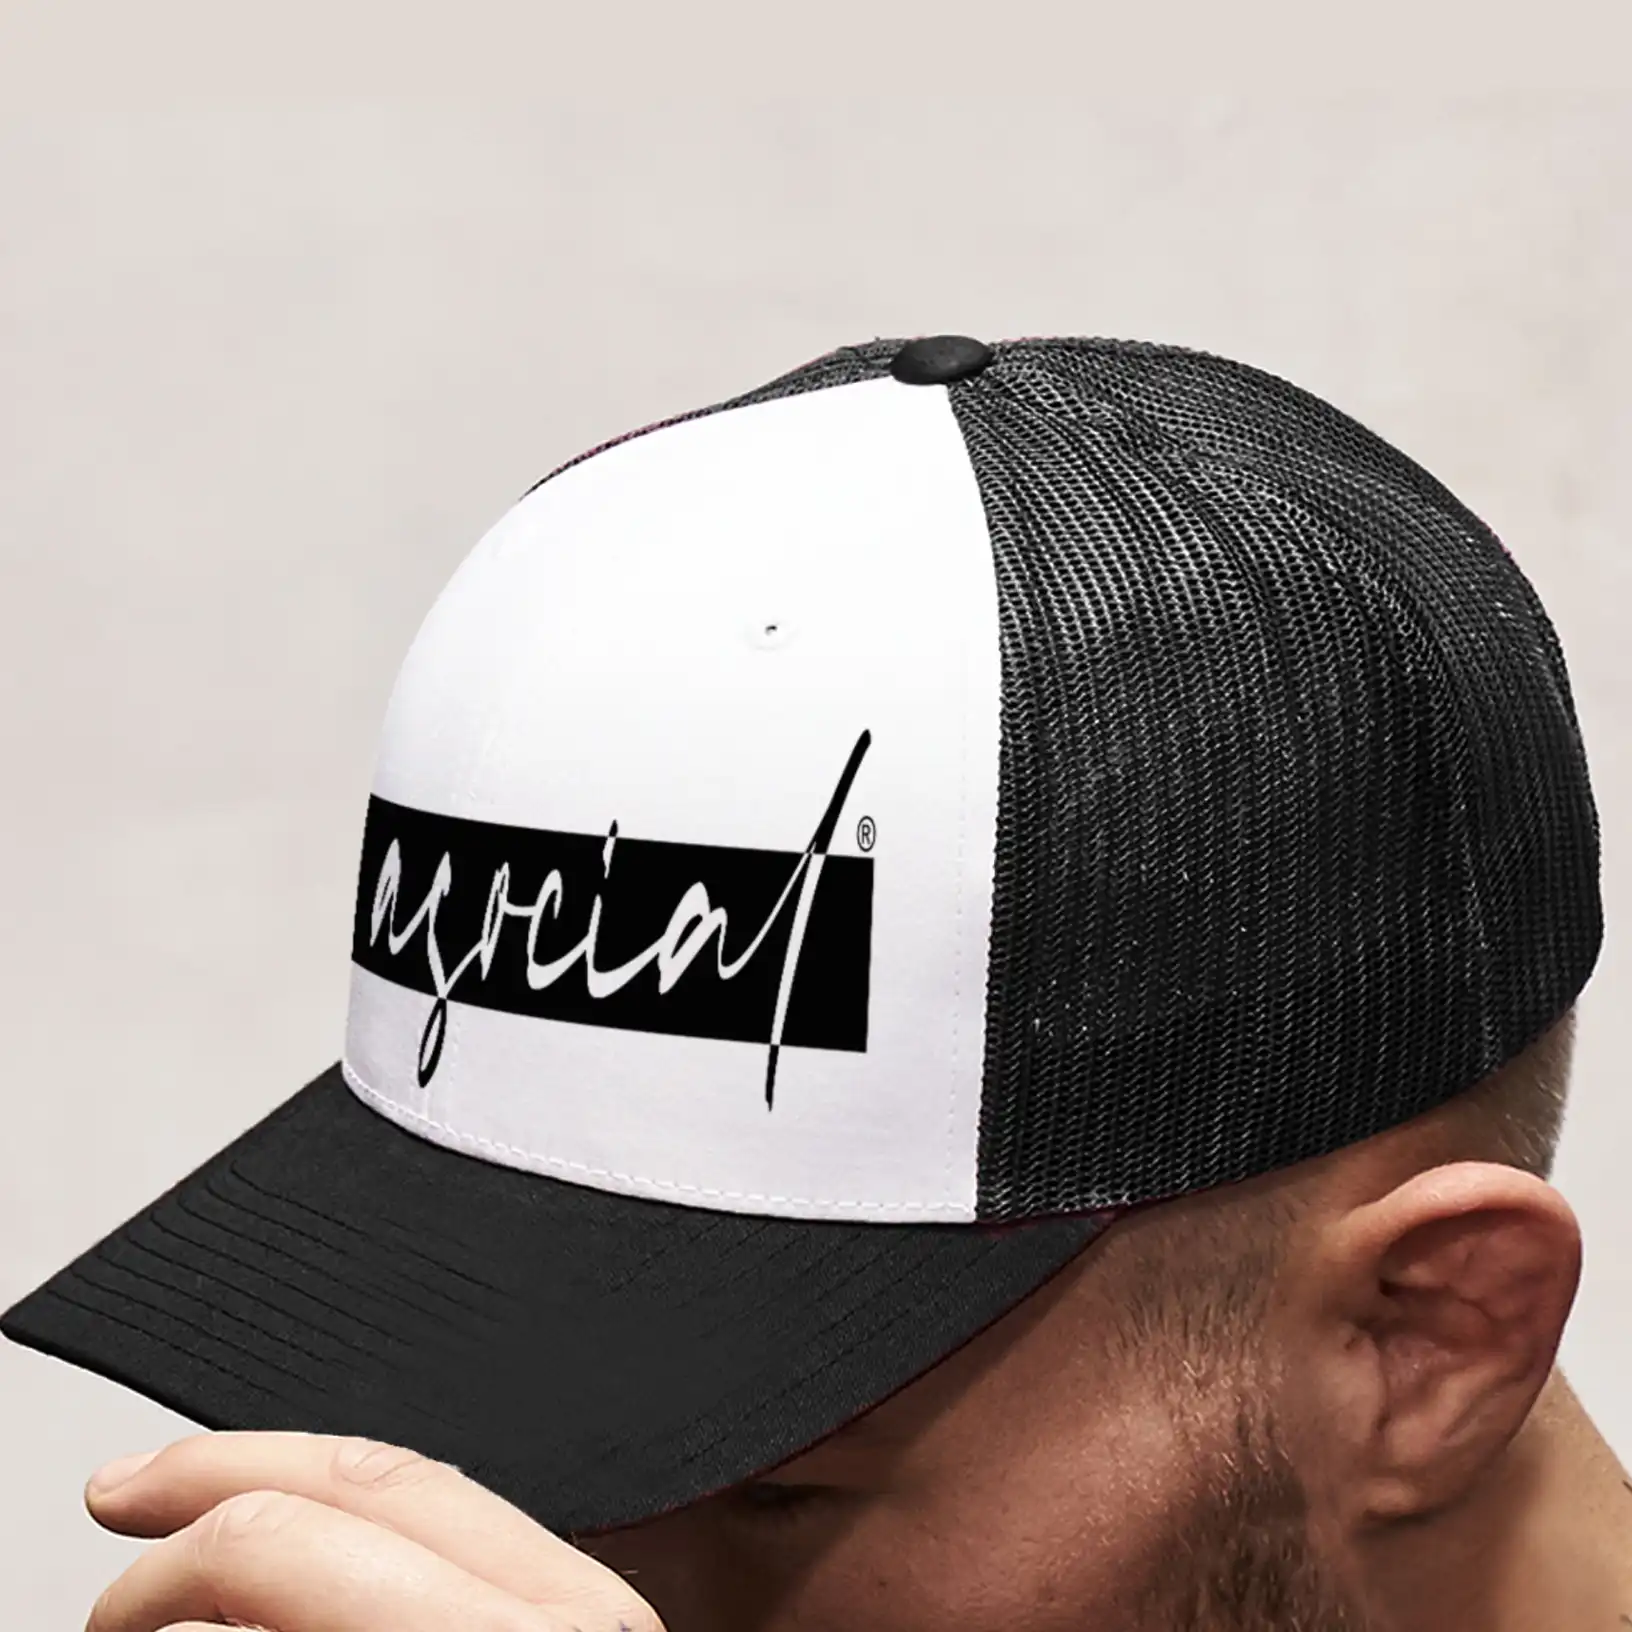 Cappello Retro Trucker "Asocial life Style" - Tinta bicolore - colore bianco/Nero - logo Black